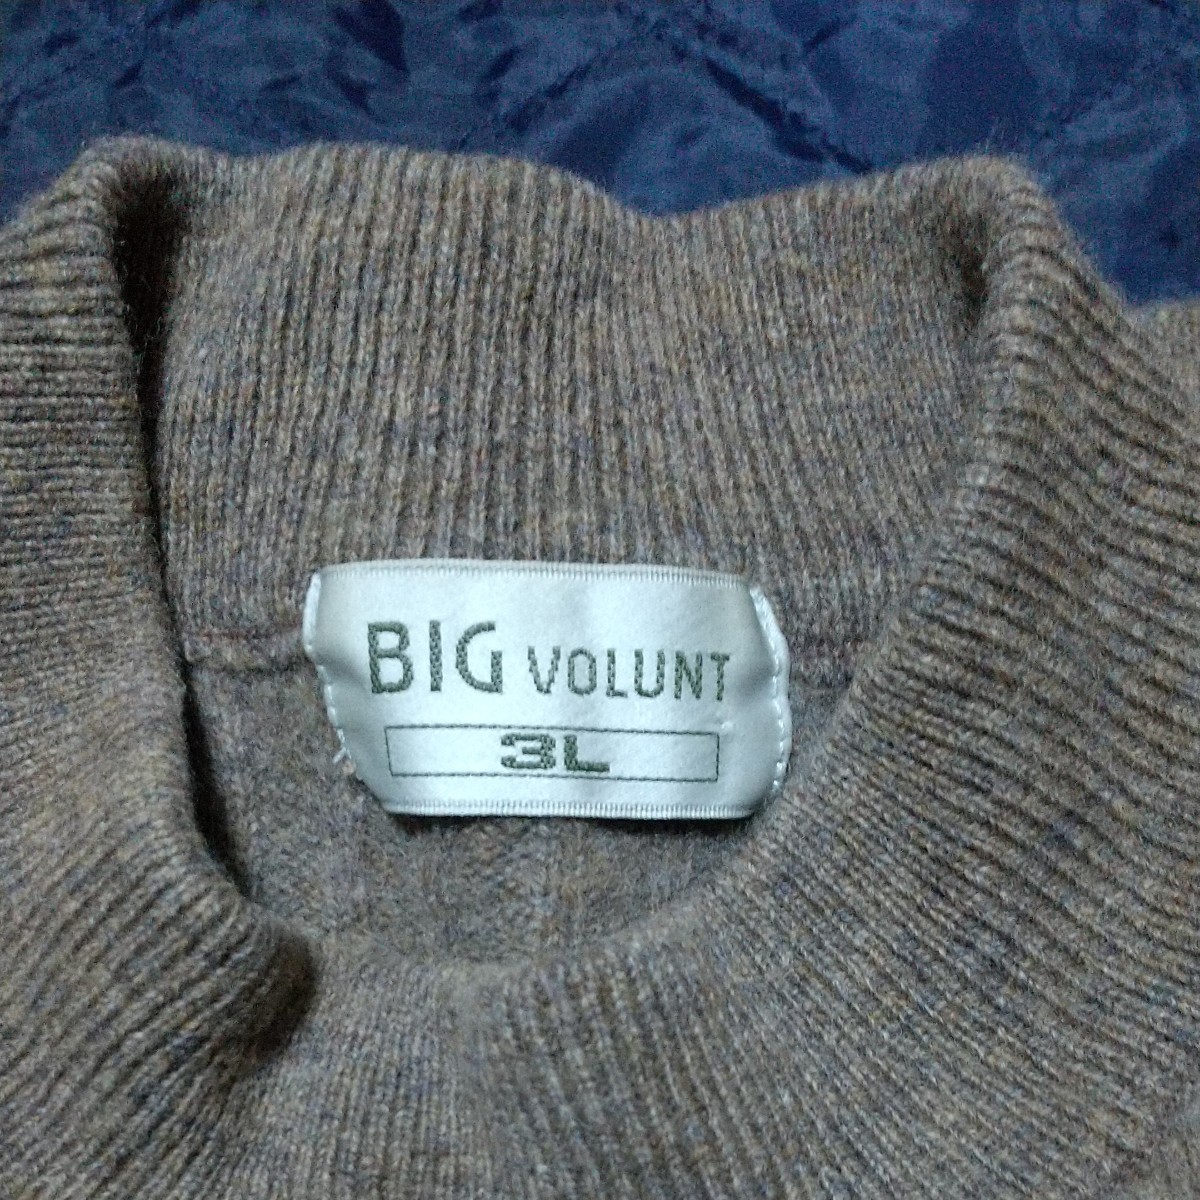 WOOL100%の3Lサイズ、ブラウン系のセーター